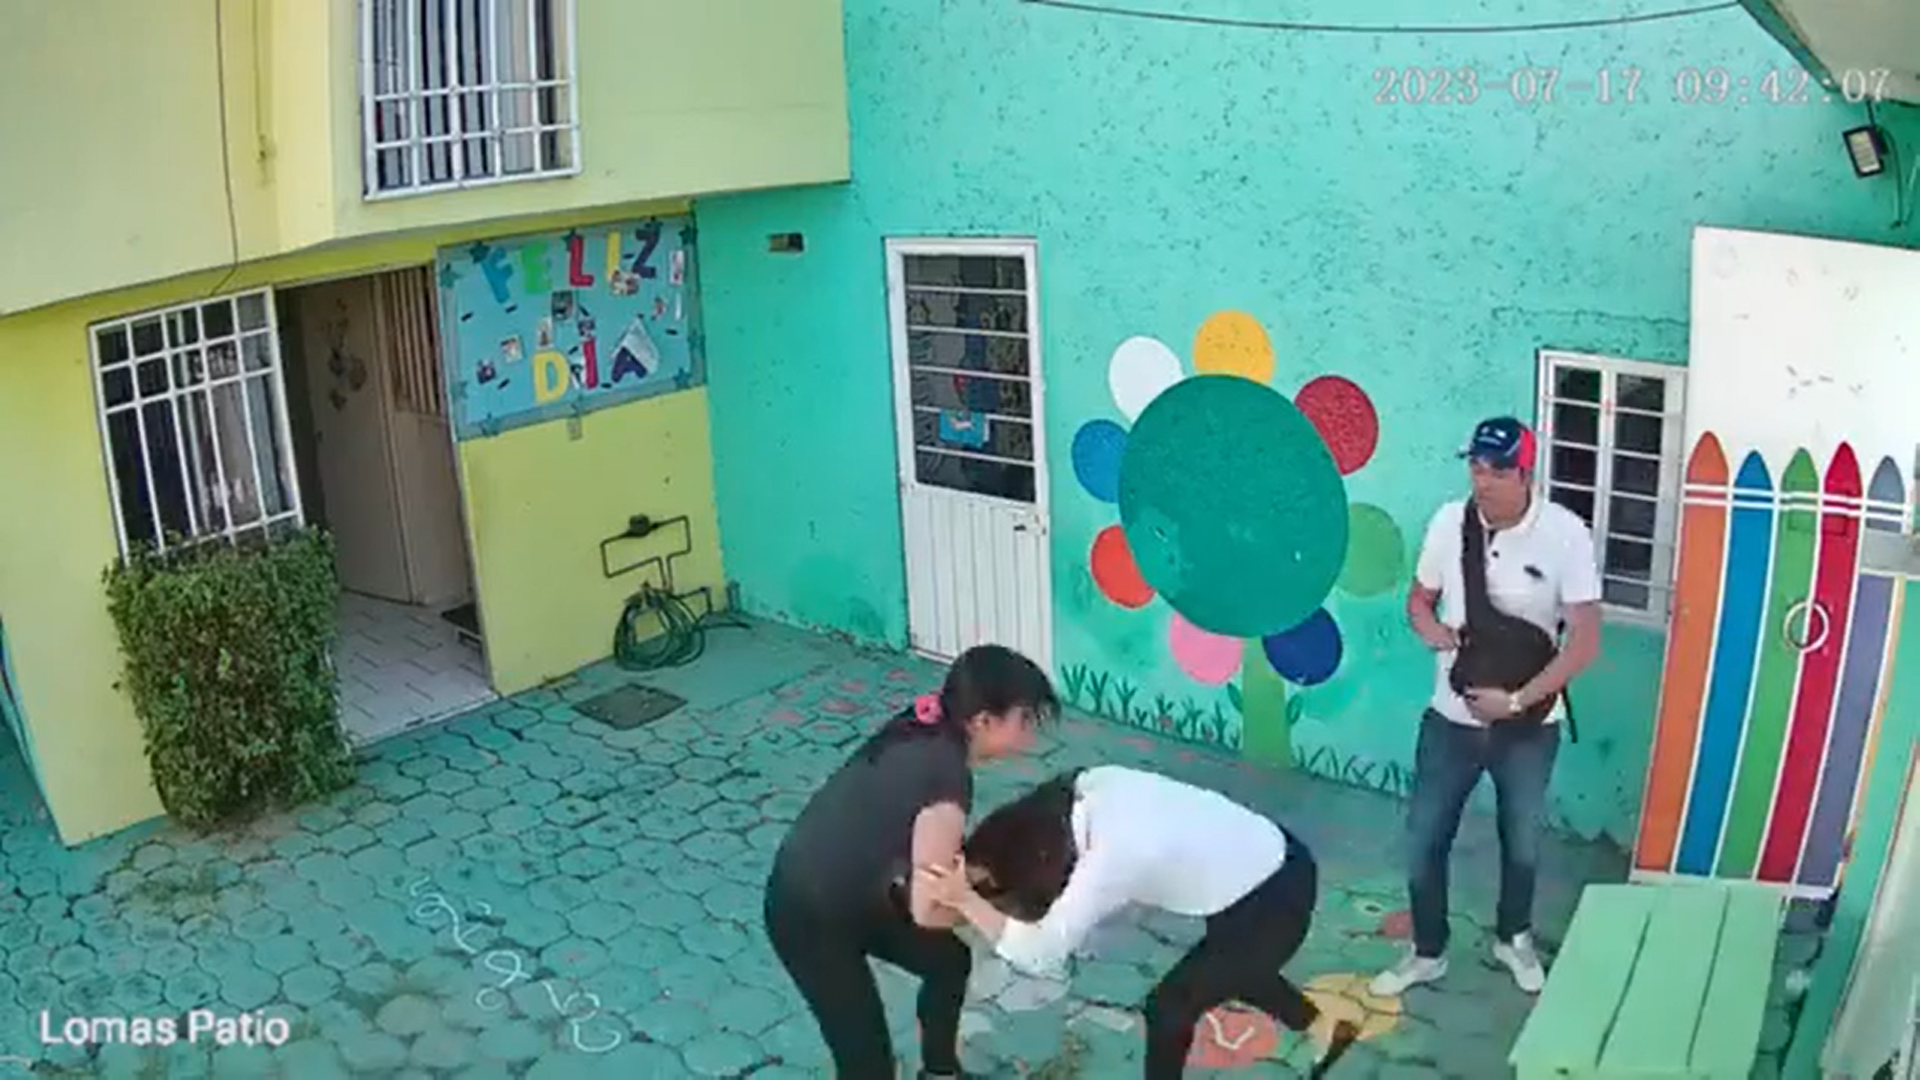 Maestra golpeada en kinder Frida Kahlo en Cuatitlán Izcalli explica qué pasó brenda detenidos 3